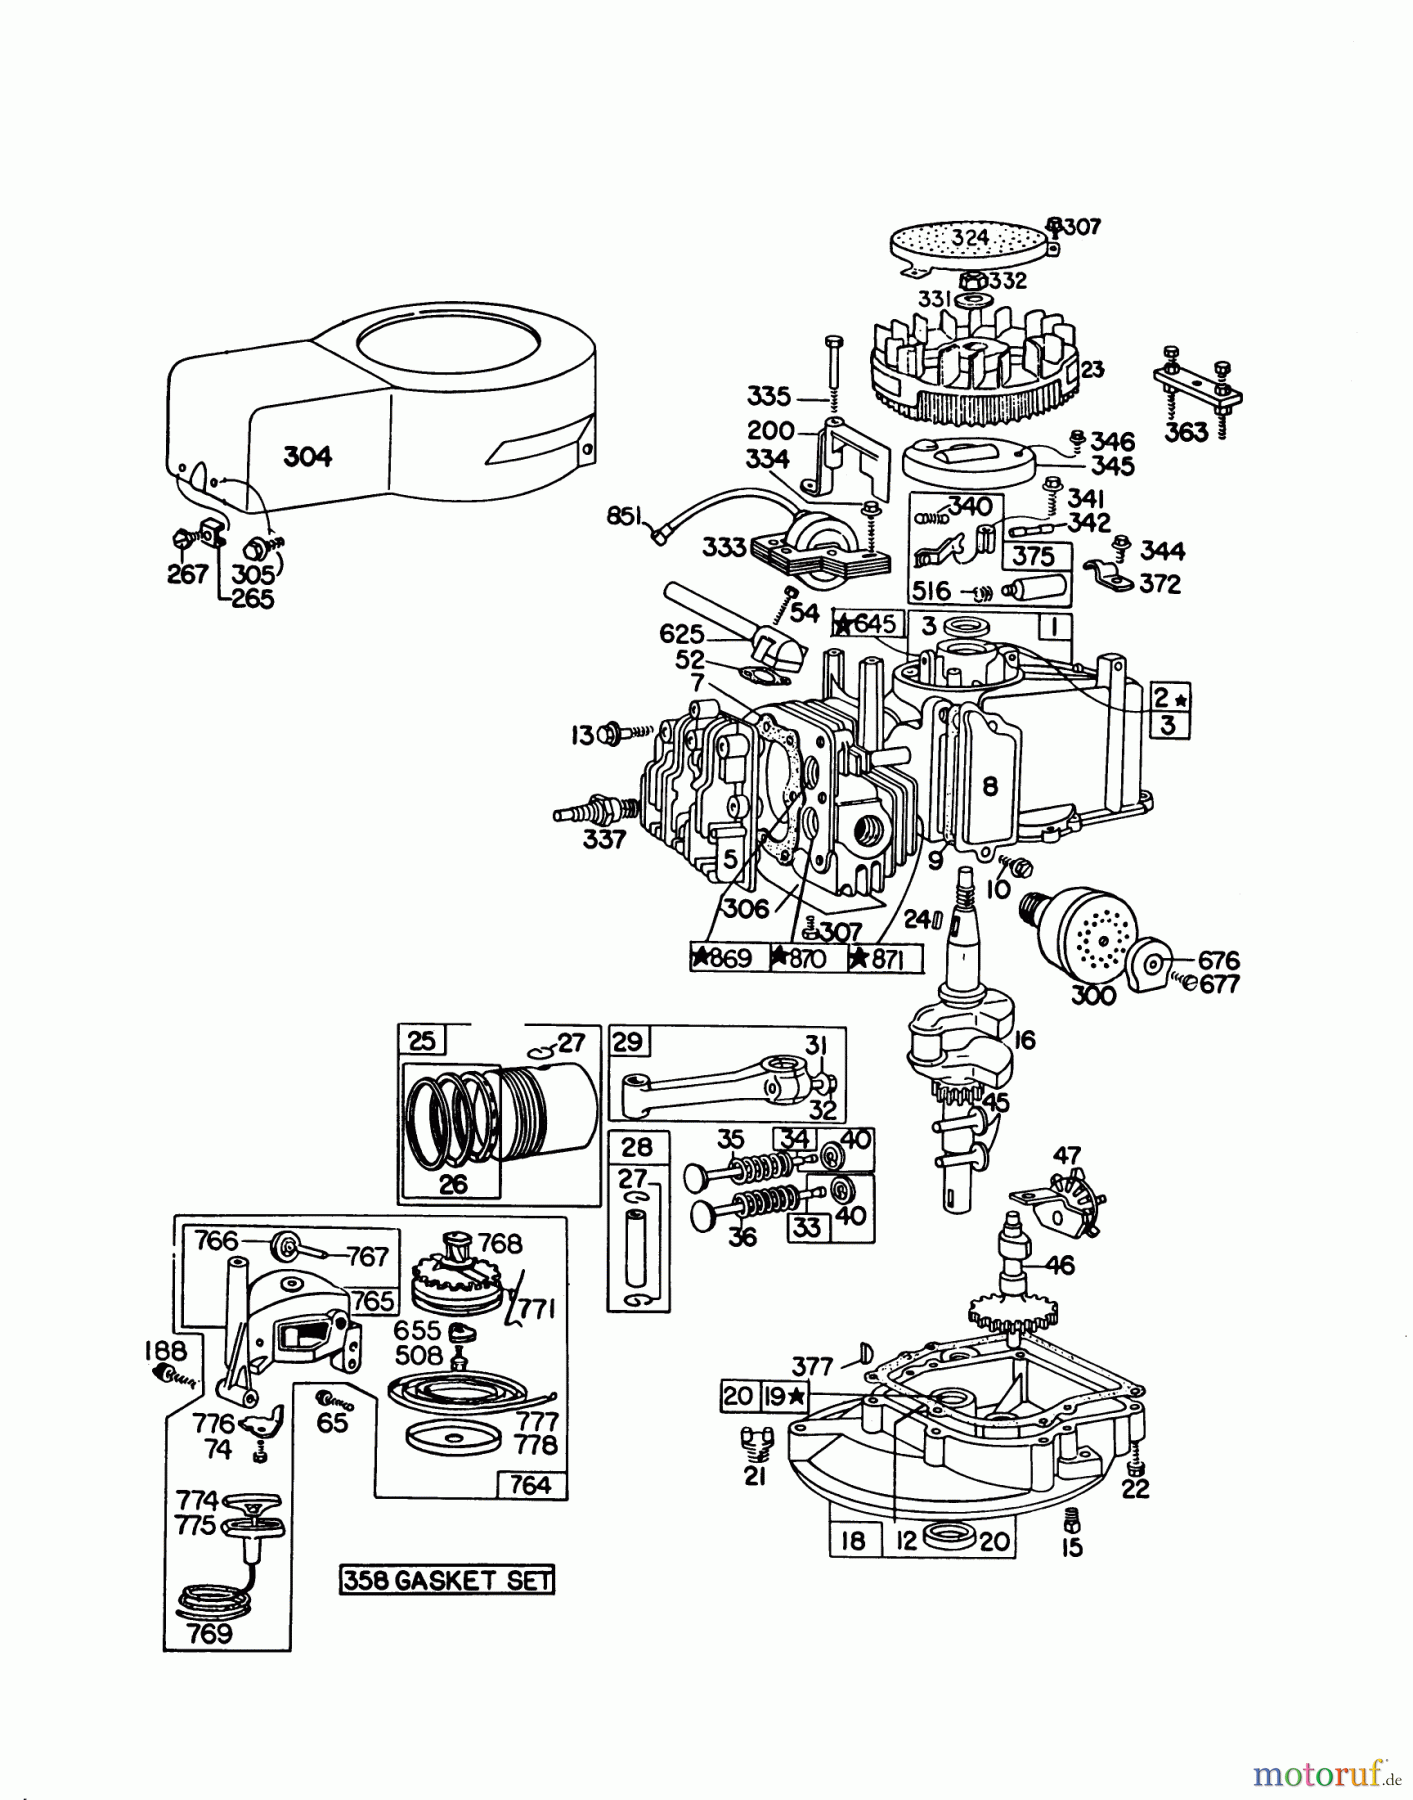  Toro Neu Mowers, Walk-Behind Seite 1 16390 - Toro Whirlwind PowR, 1979 (9000001-9999999) ENGINE BRIGGS & STRATTON MODEL 92908-1842-04 FOR 21